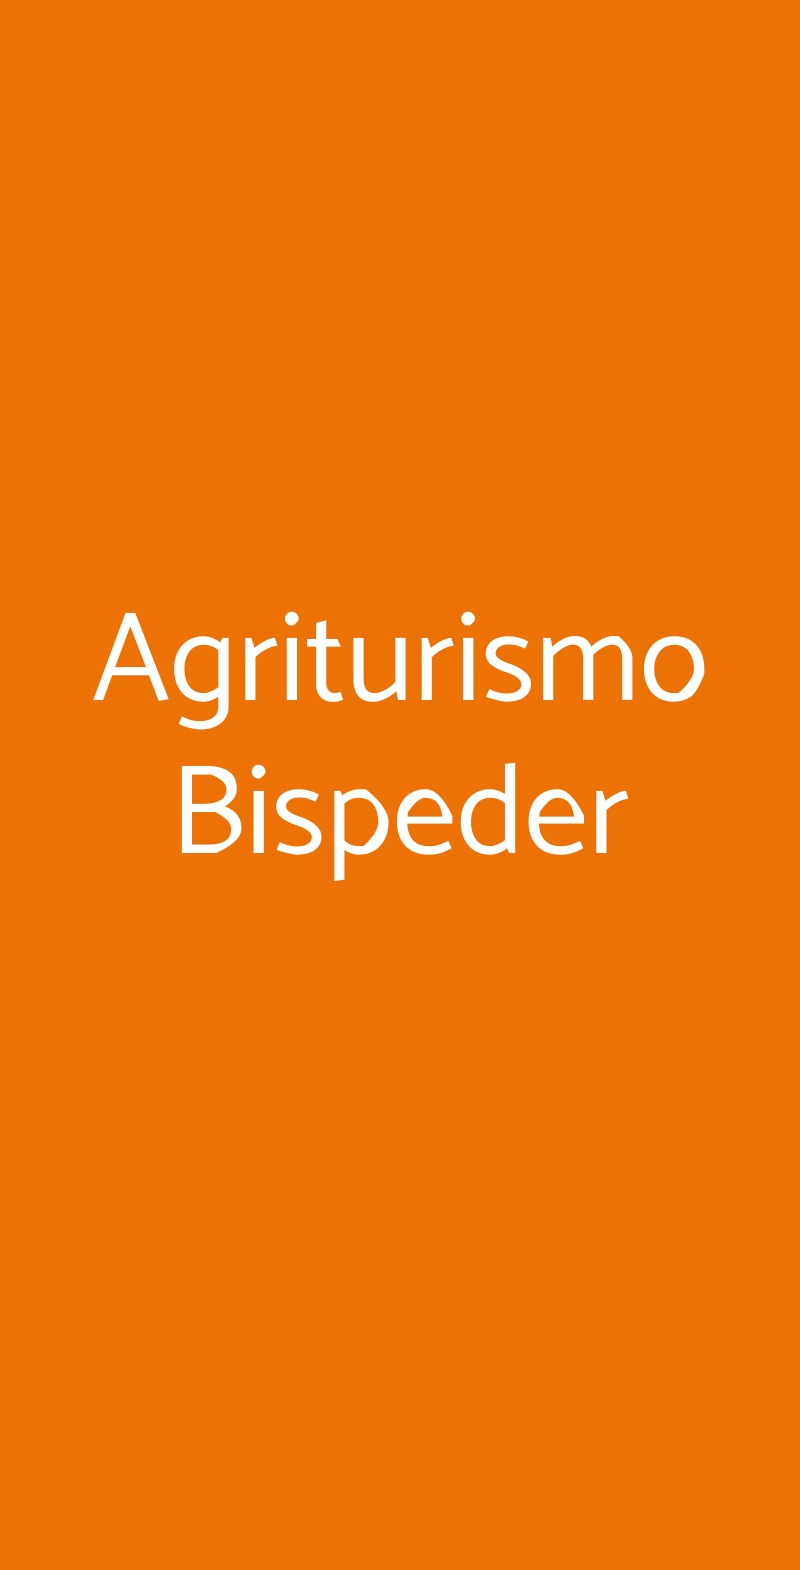 Agriturismo Bispeder Casorzo menù 1 pagina